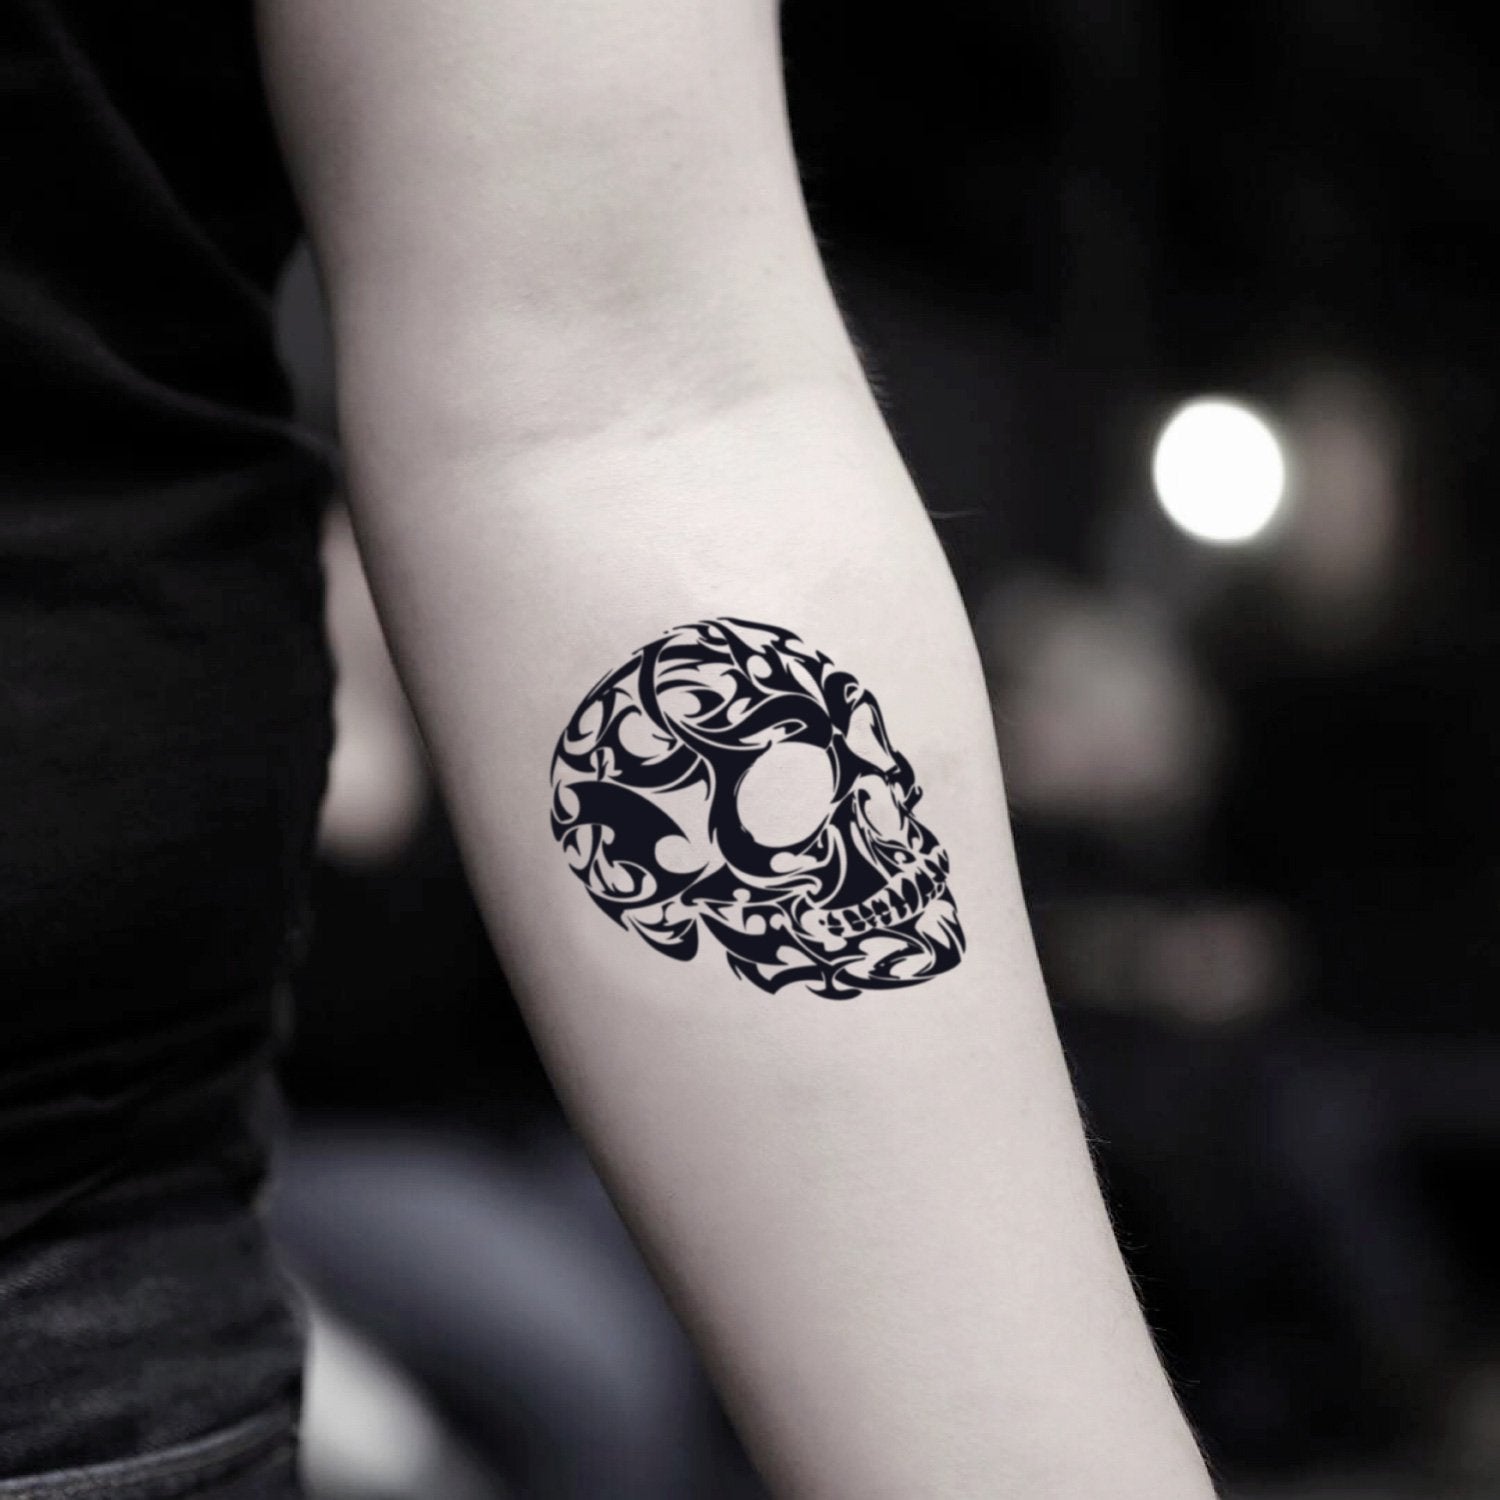 fake small 3 d skull illustrative temporary tattoo sticker design idea on inner arm